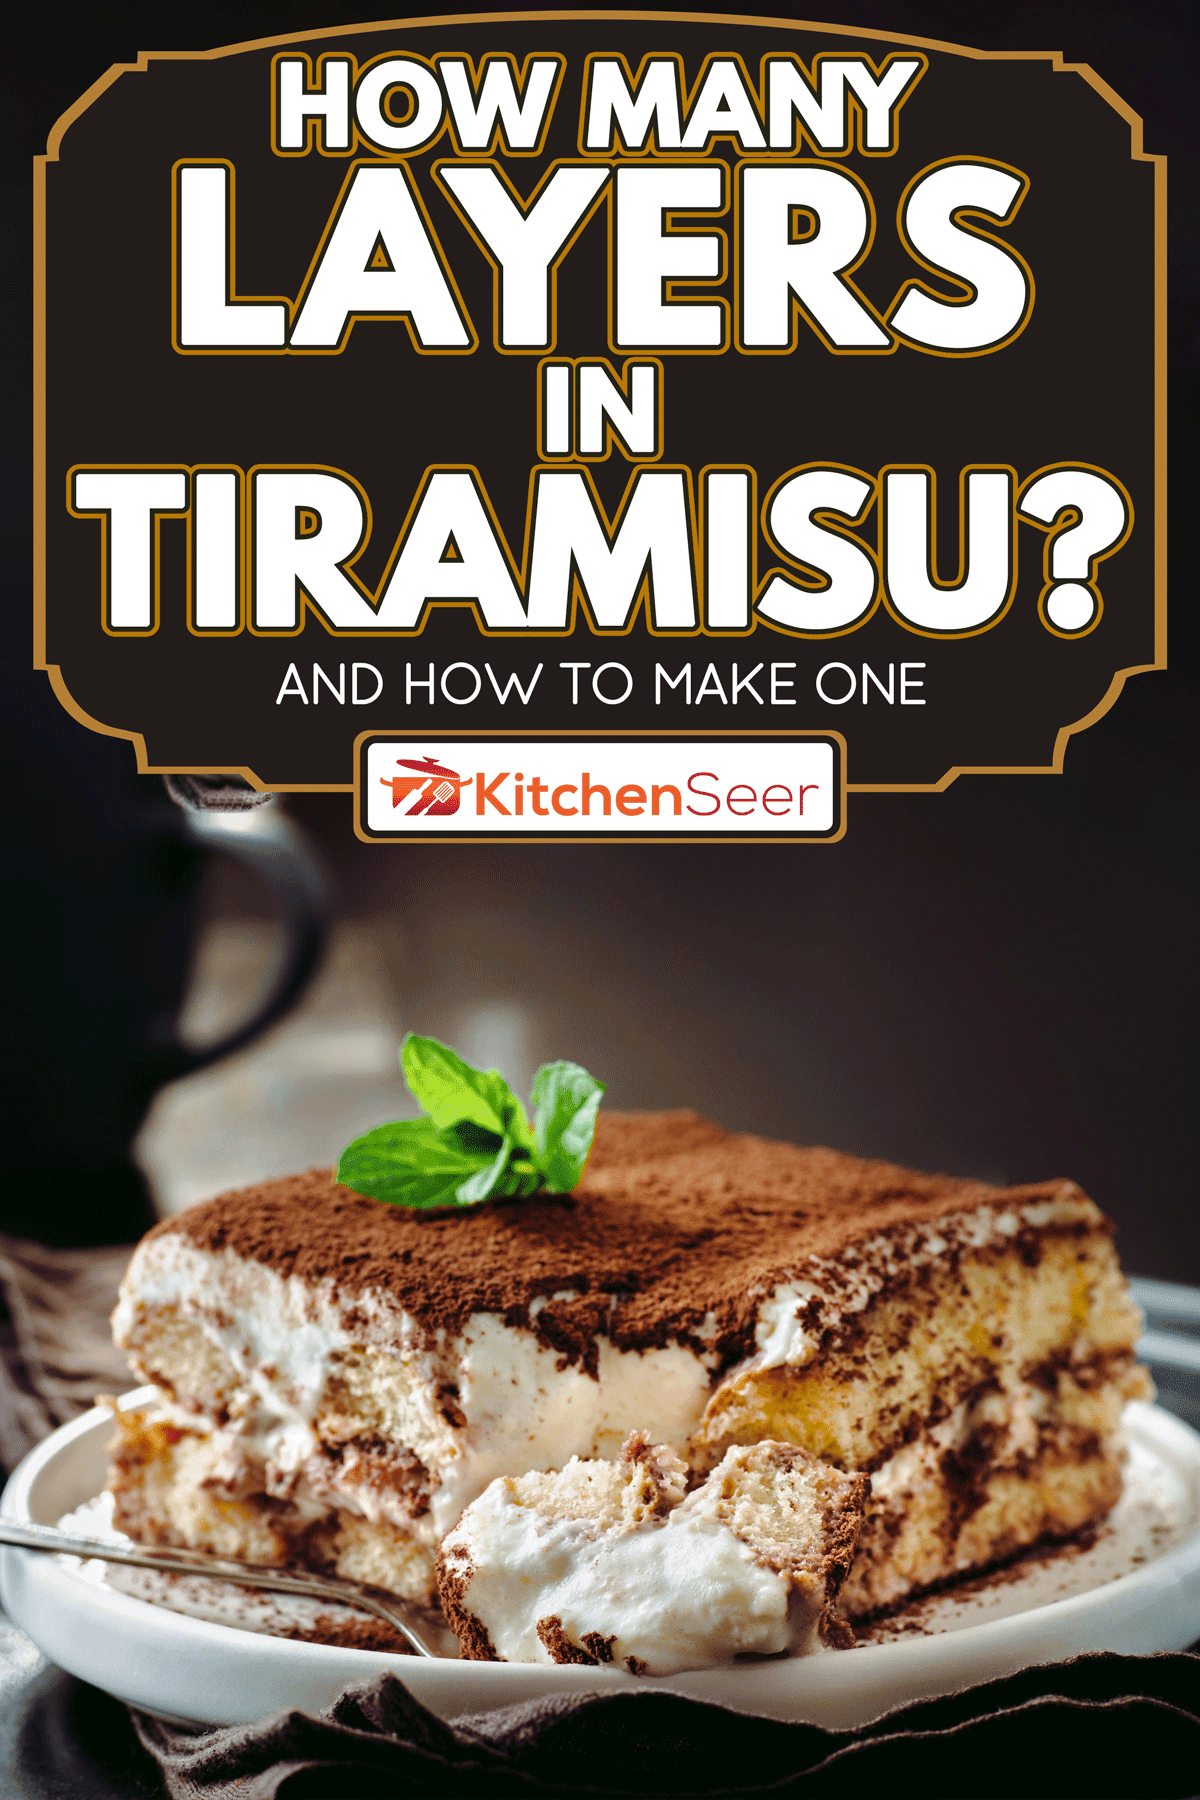 完美自制的薄荷提拉米苏蛋糕，提拉米苏有多少层?[以及如何制作一个]